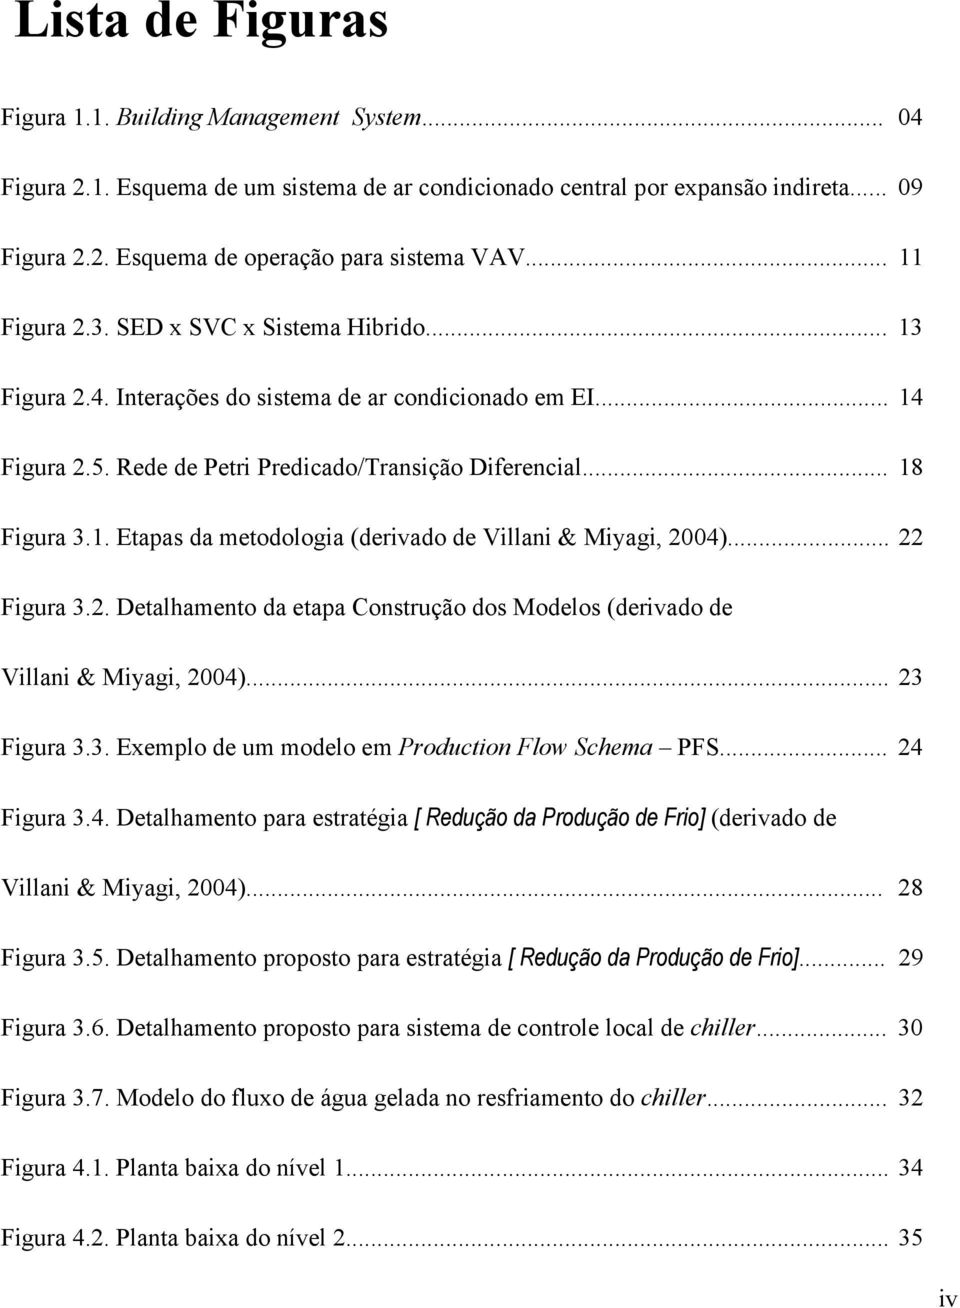 .. 22 Figura 3.2. Detalhamento da etapa Construção dos Modelos (derivado de Villani & Miyagi, 2004)... 23 Figura 3.3. Exemplo de um modelo em Production Flow Schema PFS... 24 Figura 3.4. Detalhamento para estratégia [ Redução da Produção de Frio] (derivado de Villani & Miyagi, 2004).